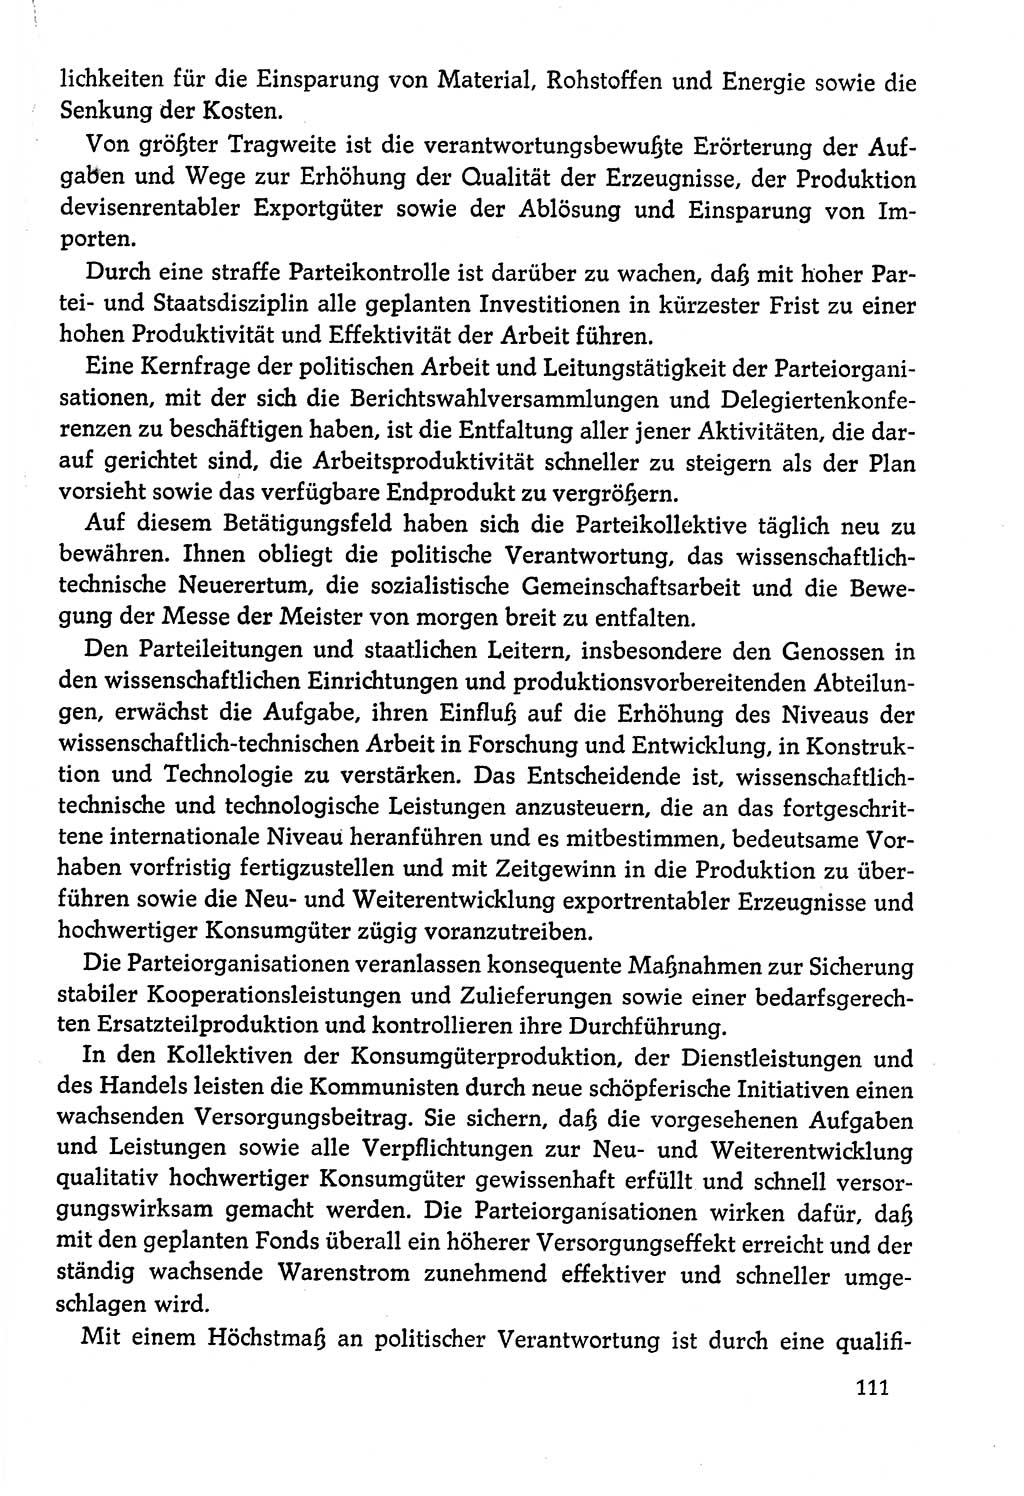 Dokumente der Sozialistischen Einheitspartei Deutschlands (SED) [Deutsche Demokratische Republik (DDR)] 1978-1979, Seite 111 (Dok. SED DDR 1978-1979, S. 111)